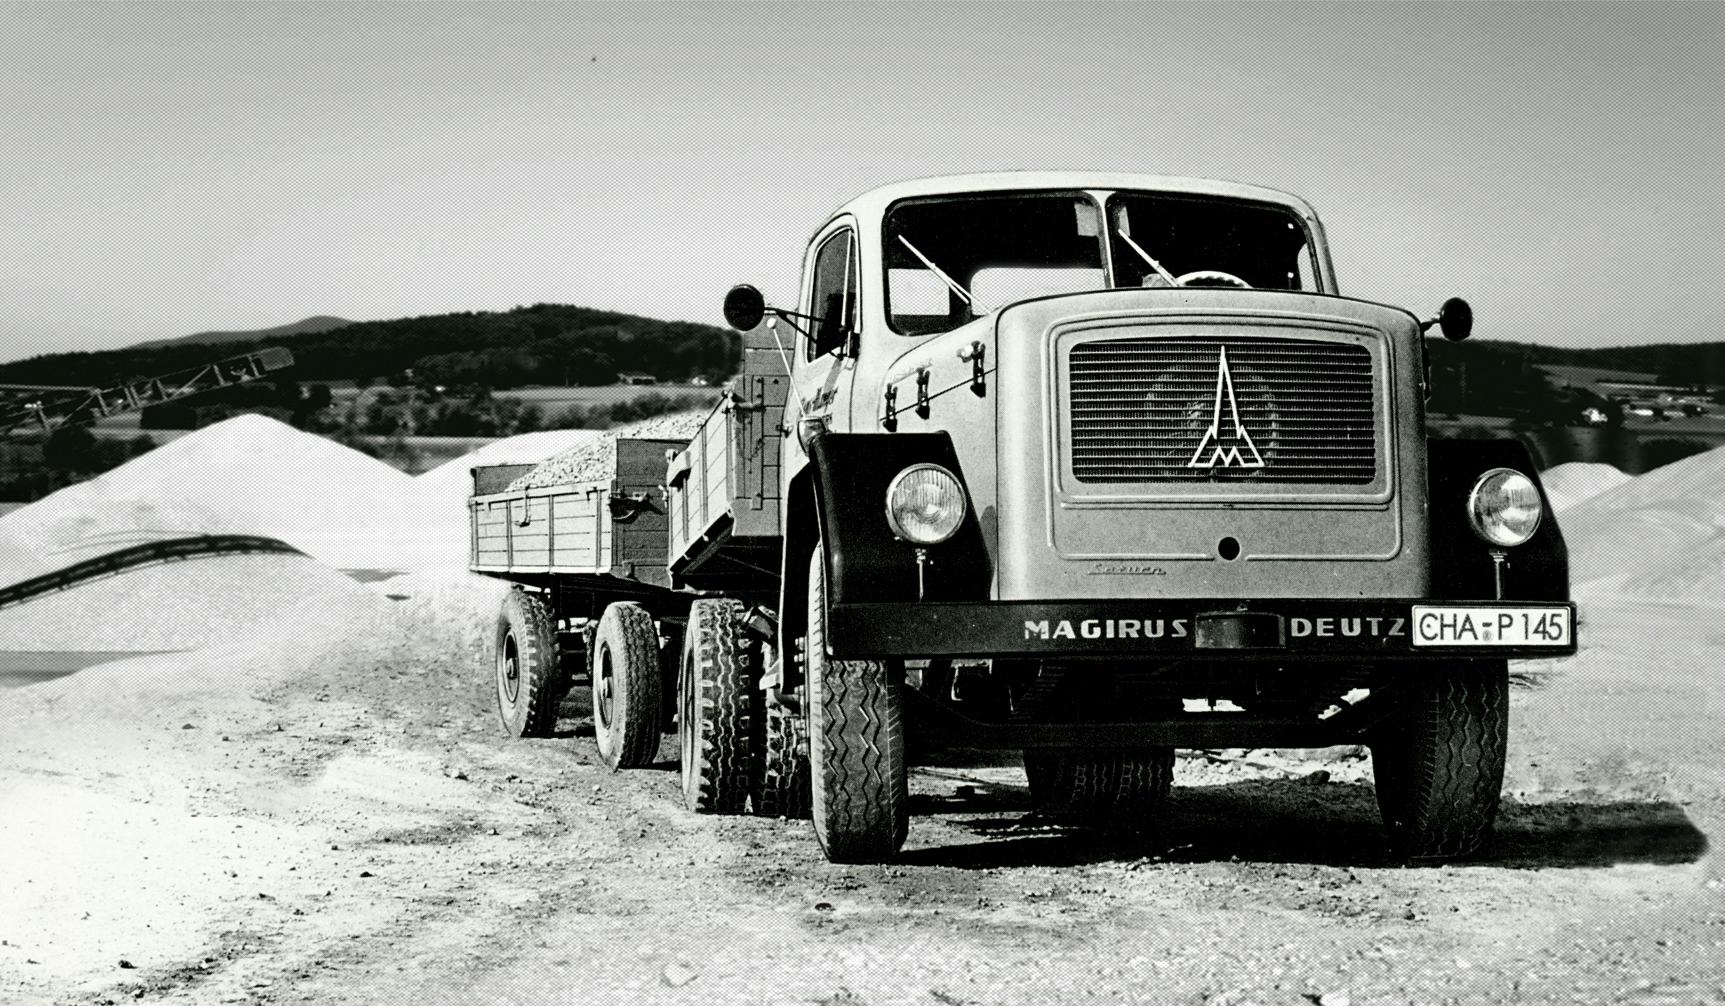 Geschichte der Josef Rädlinger Unternehmensgruppe: Der erste Lastwagen, ein Magirus Saturn, von Josef Rädlinger beim Transport von Kies